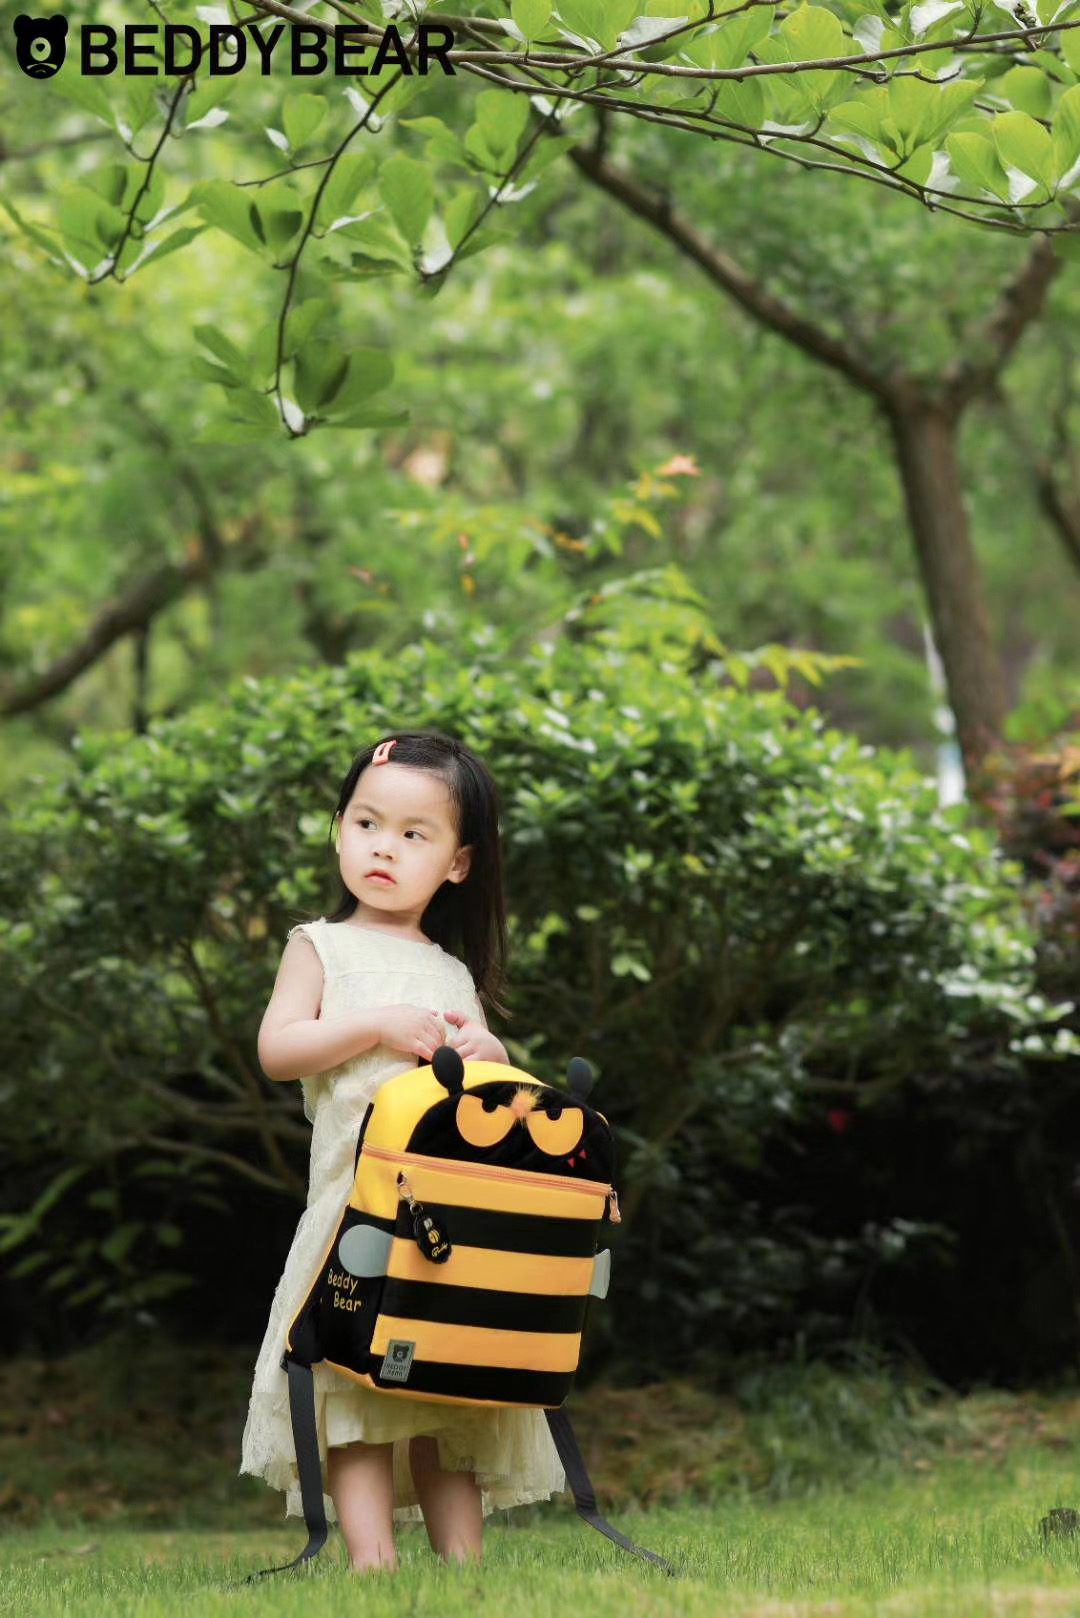 Balo Cho Bé 4 tuổi Beddybear dòng Cute Bag dành cho Bé Học Mầm non Mẫu giáo - họa tiết Ong Vàng Chống gù lưng - sản phẩm chính hãng bảo hành 2 năm